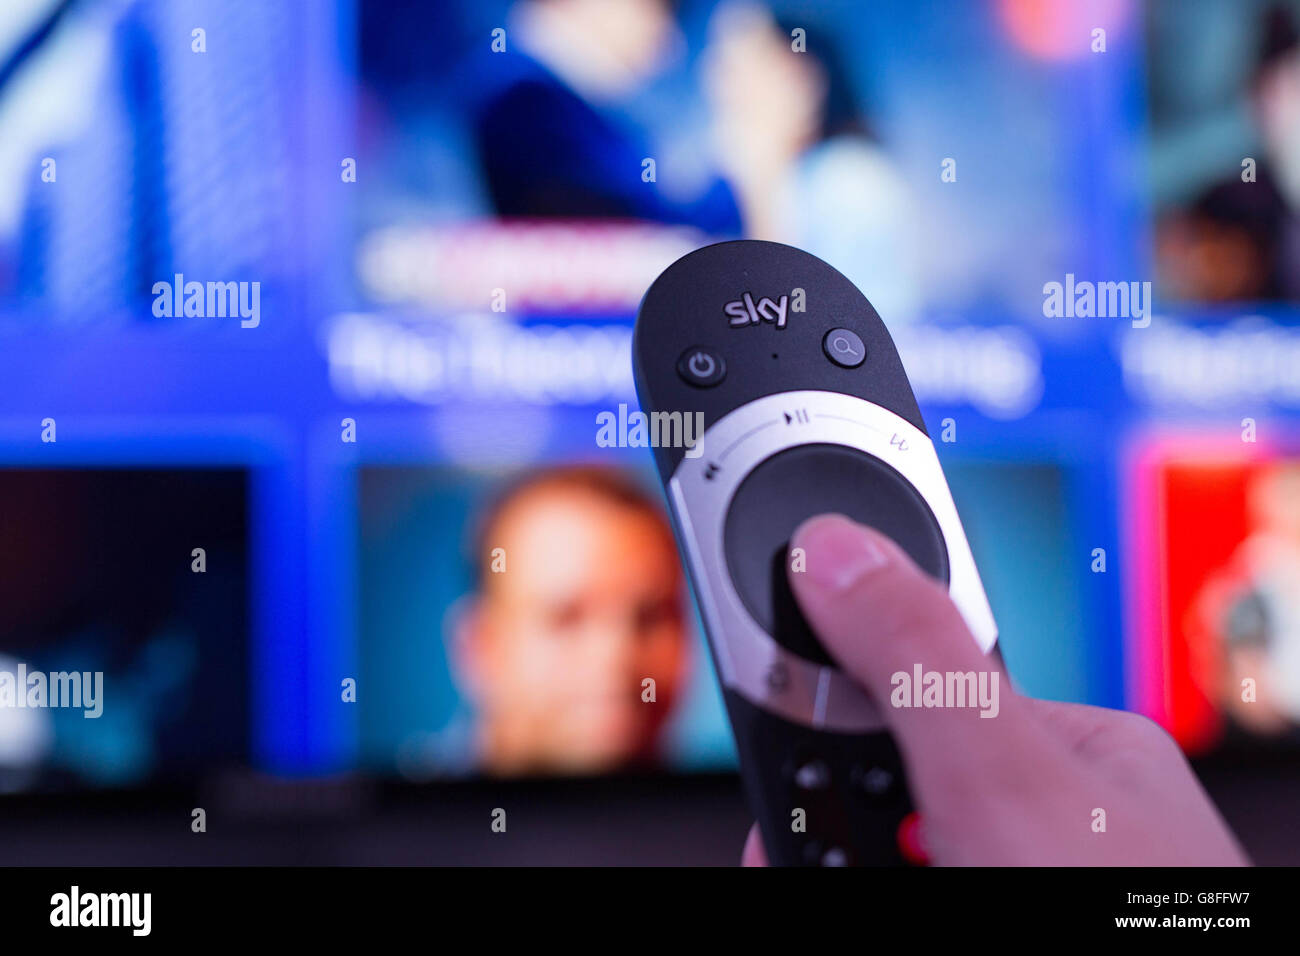 Sky's Home Entertainment-System der nächsten Generation 'Sky Q' wird bei einer Produkteinführungsveranstaltung in der Southbank, London, vorgestellt. Stockfoto